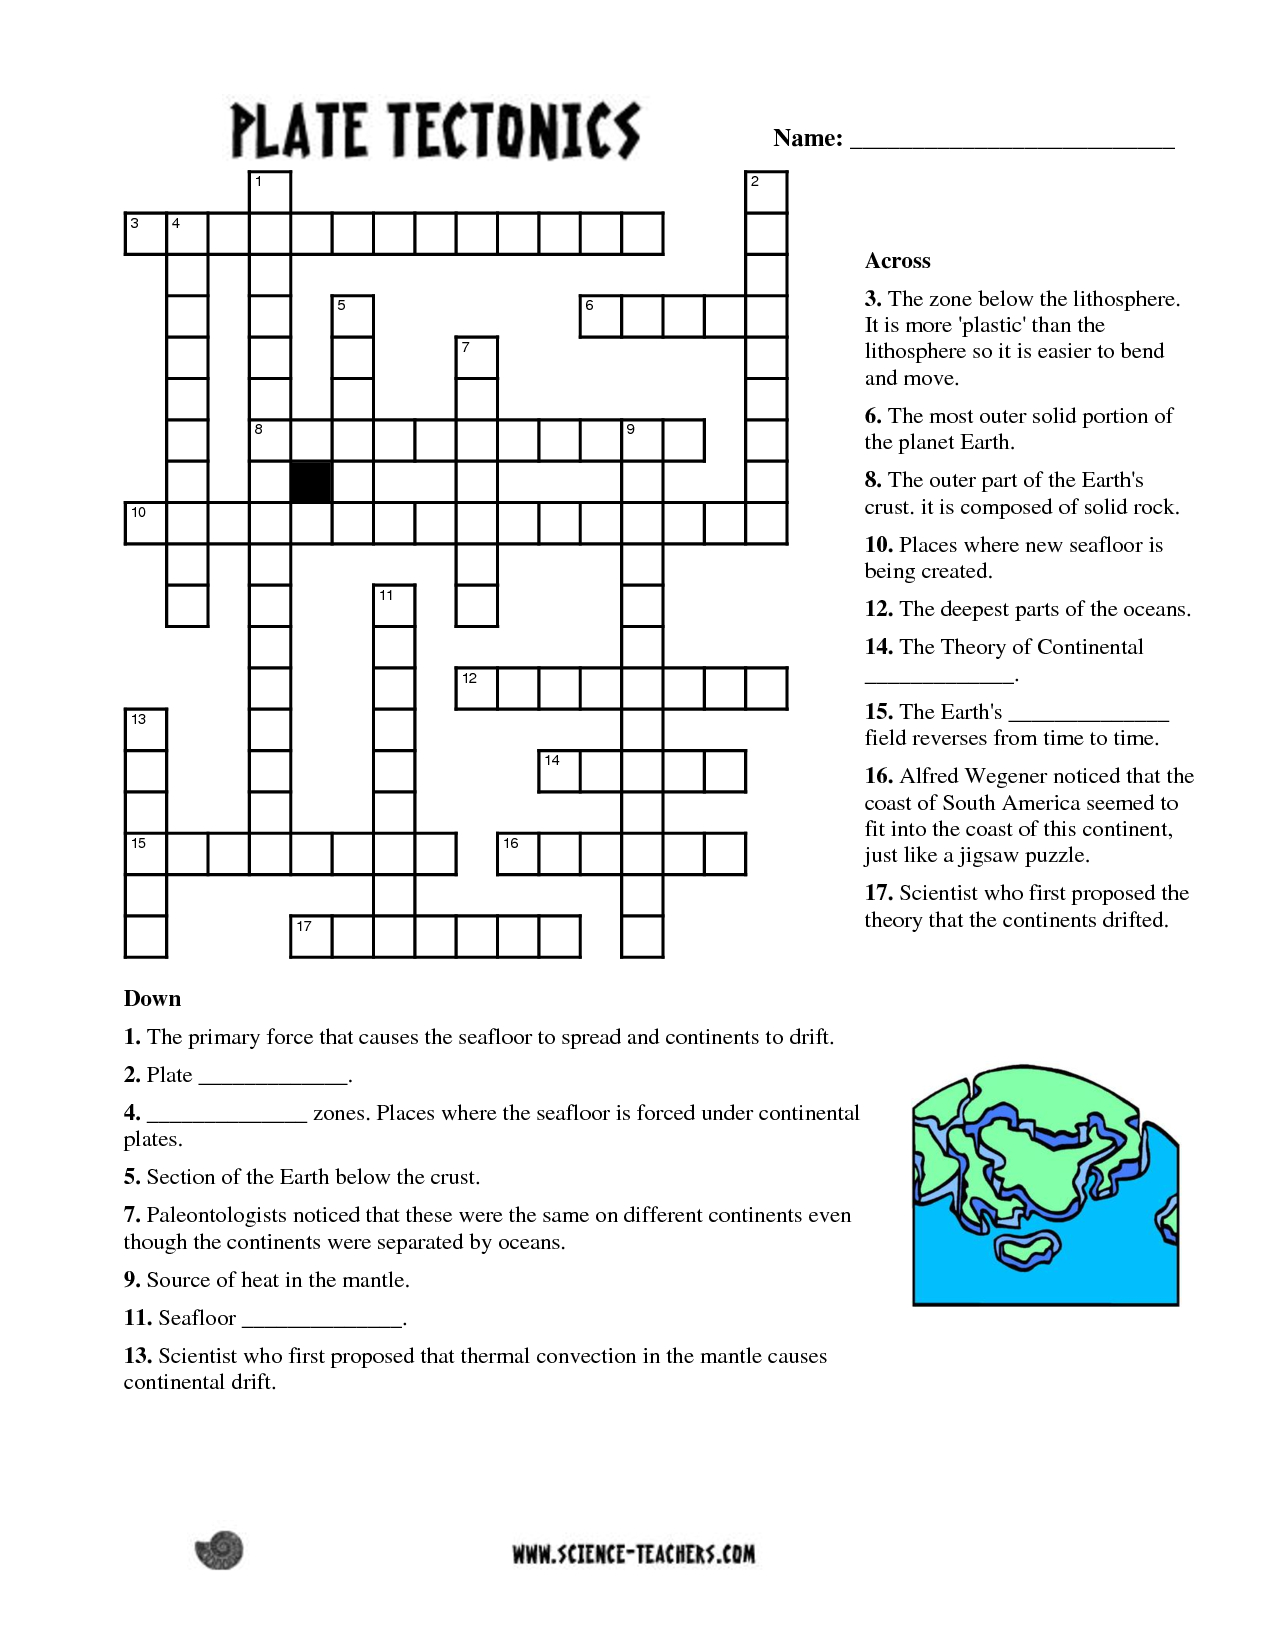 Science 7Th Grade Crossword Puzzle Wordmint Free Printable Science Crossword Puzzles Free 